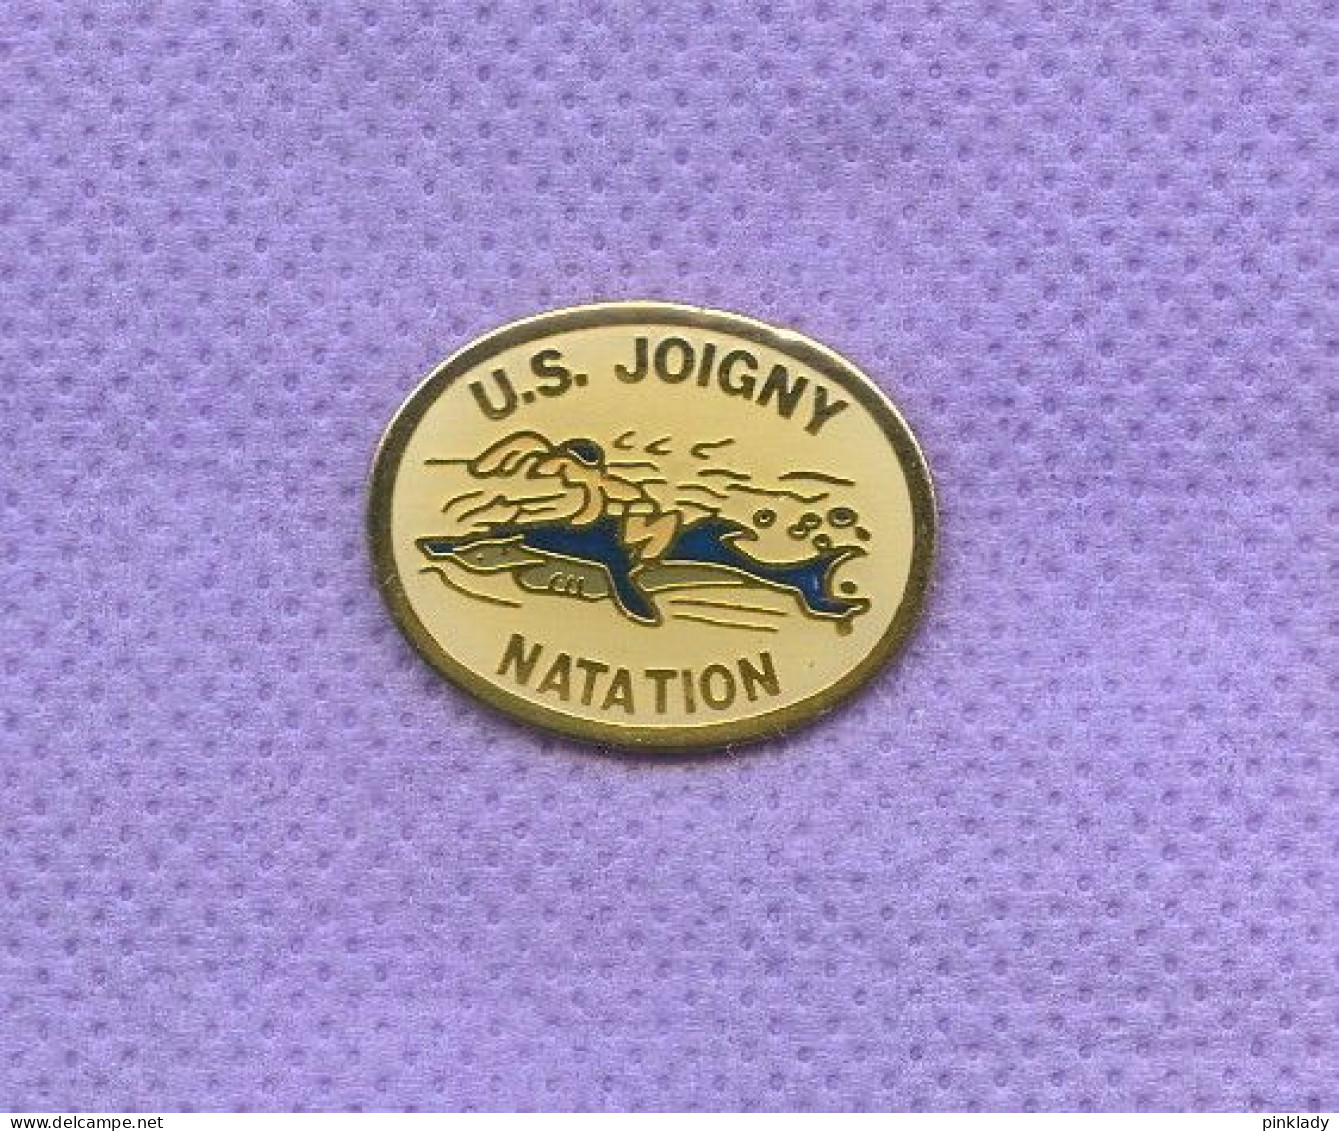 Rare Pins Natation Us Joigny Requin J189 - Nuoto